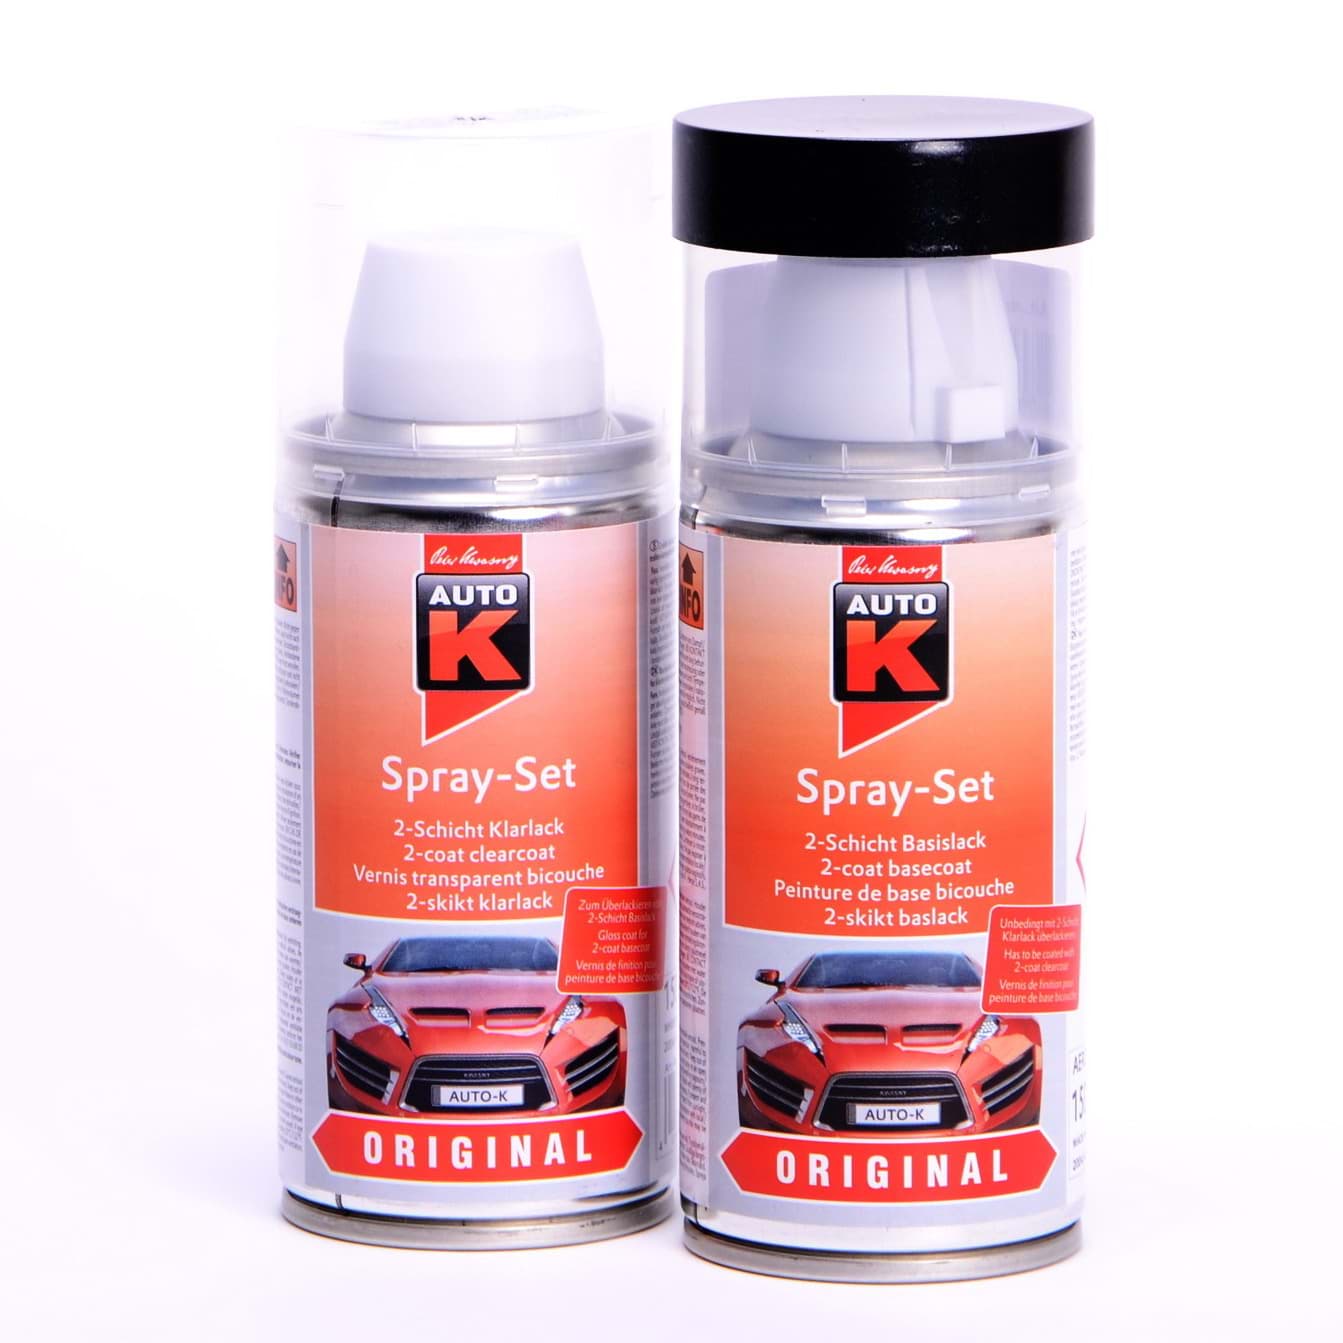 Afbeelding van Auto-K Spray-Set Autolack für Volkswagen, VW, Audi LB7Z Satinsilber met 20725